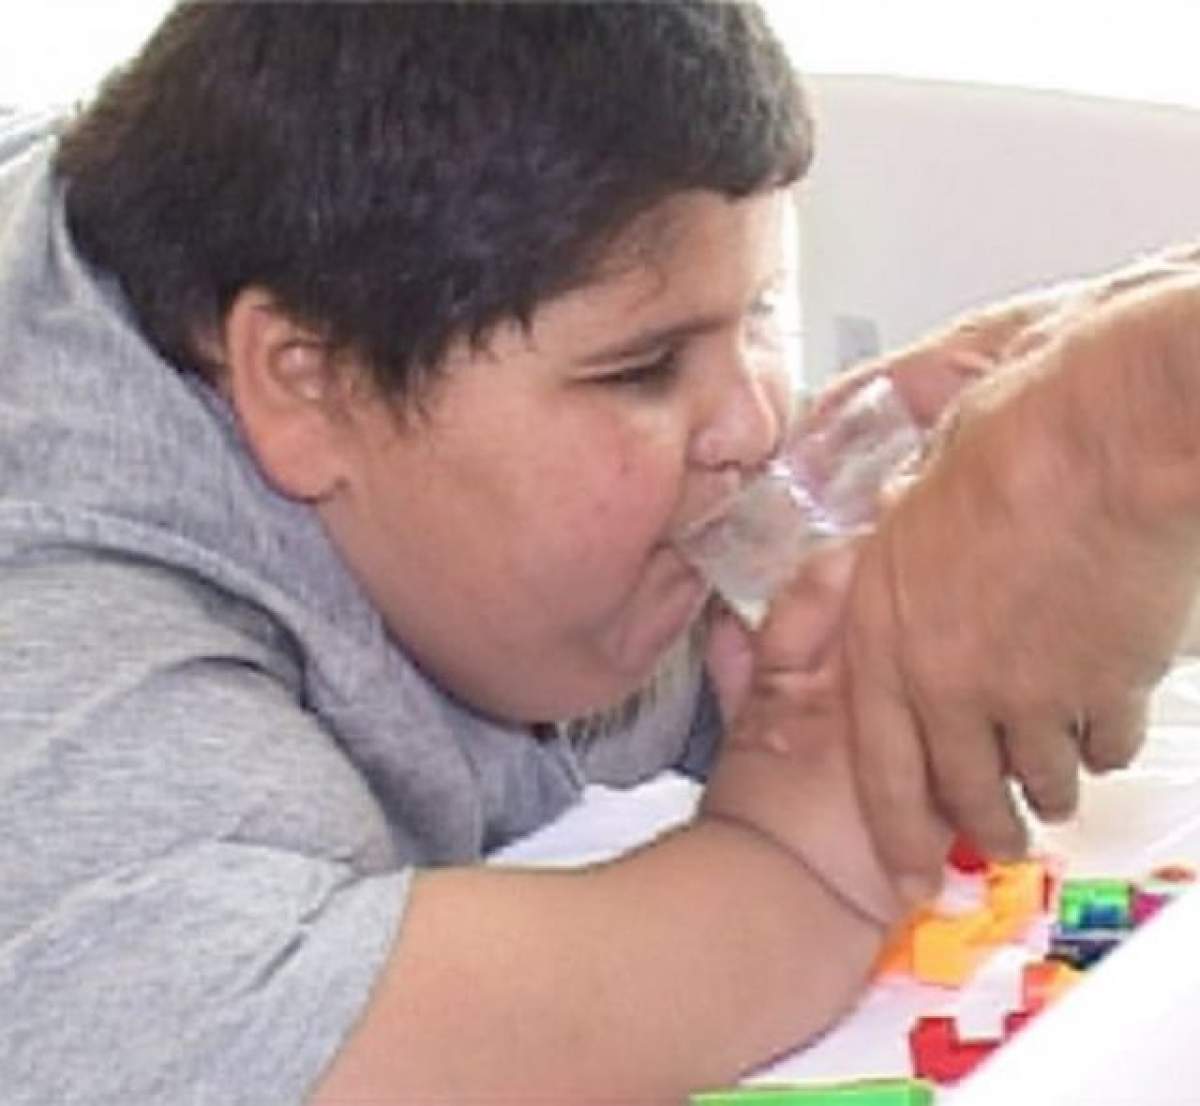 Veste bună! Alex, băiatul de şase ani care se confruntă cu obezitatea morbidă, a început să meargă!